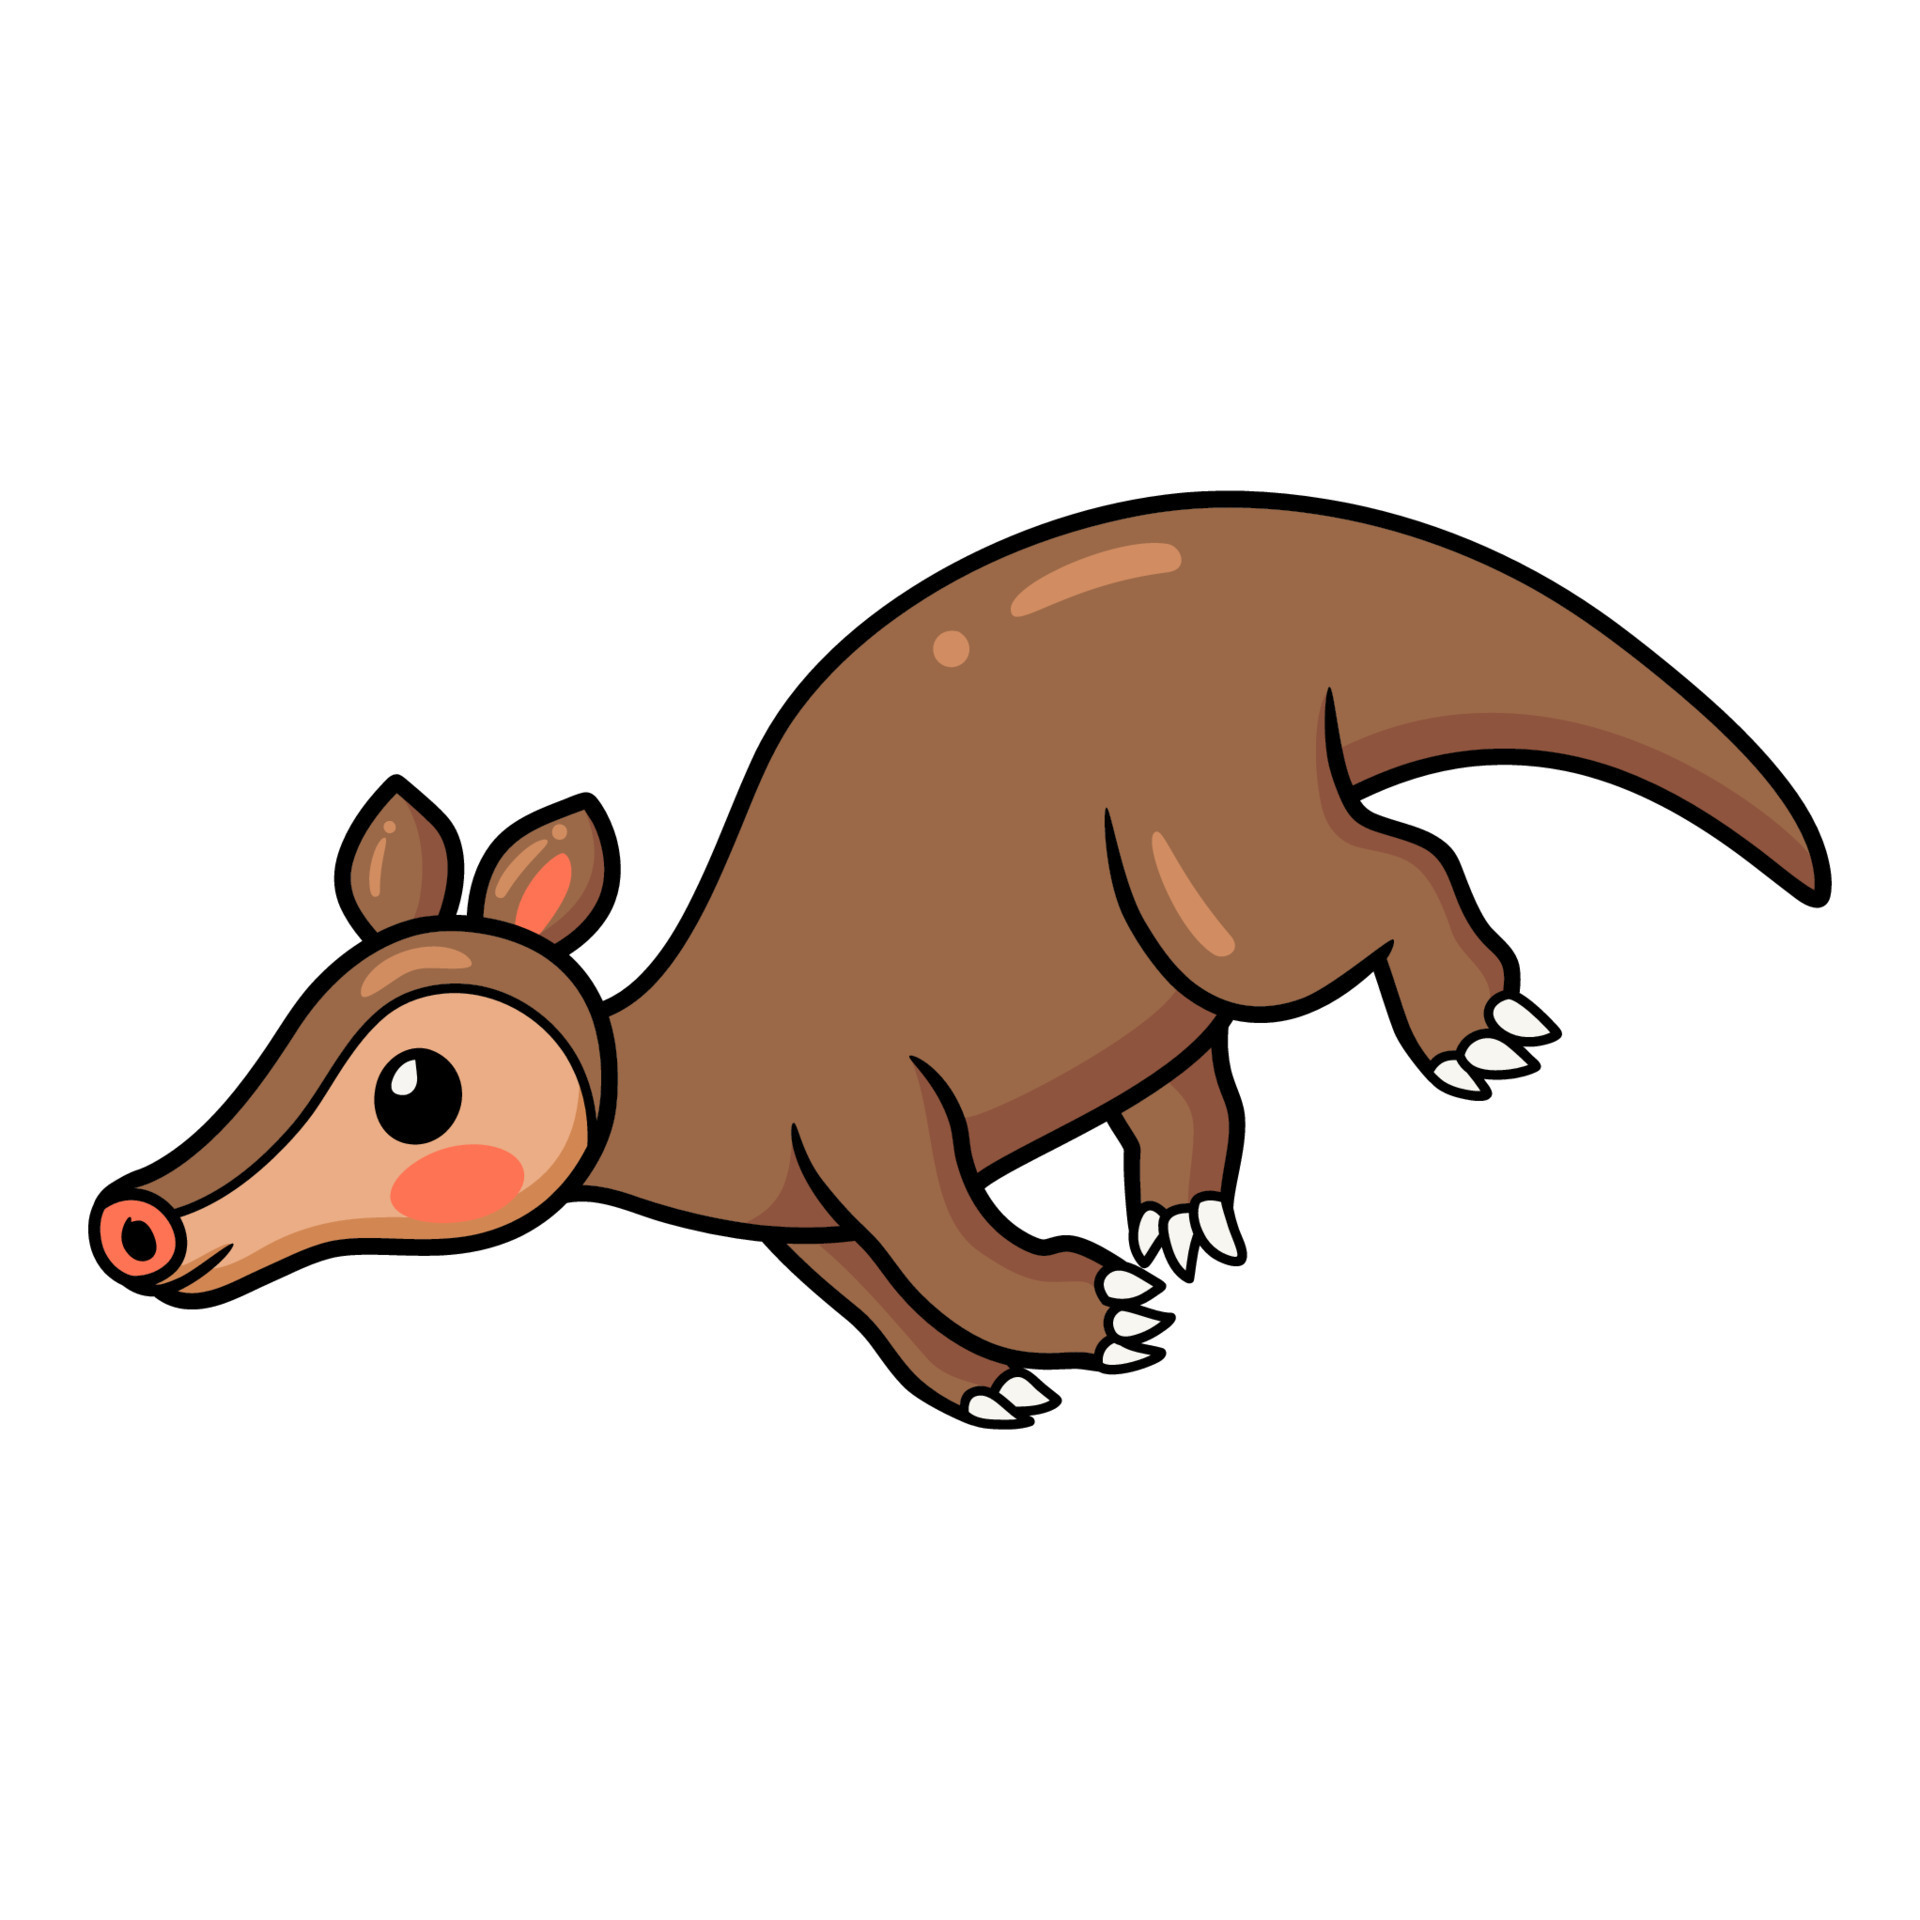 Cute little aardvark cartoon running 14467752 Vector Art at Vecteezy